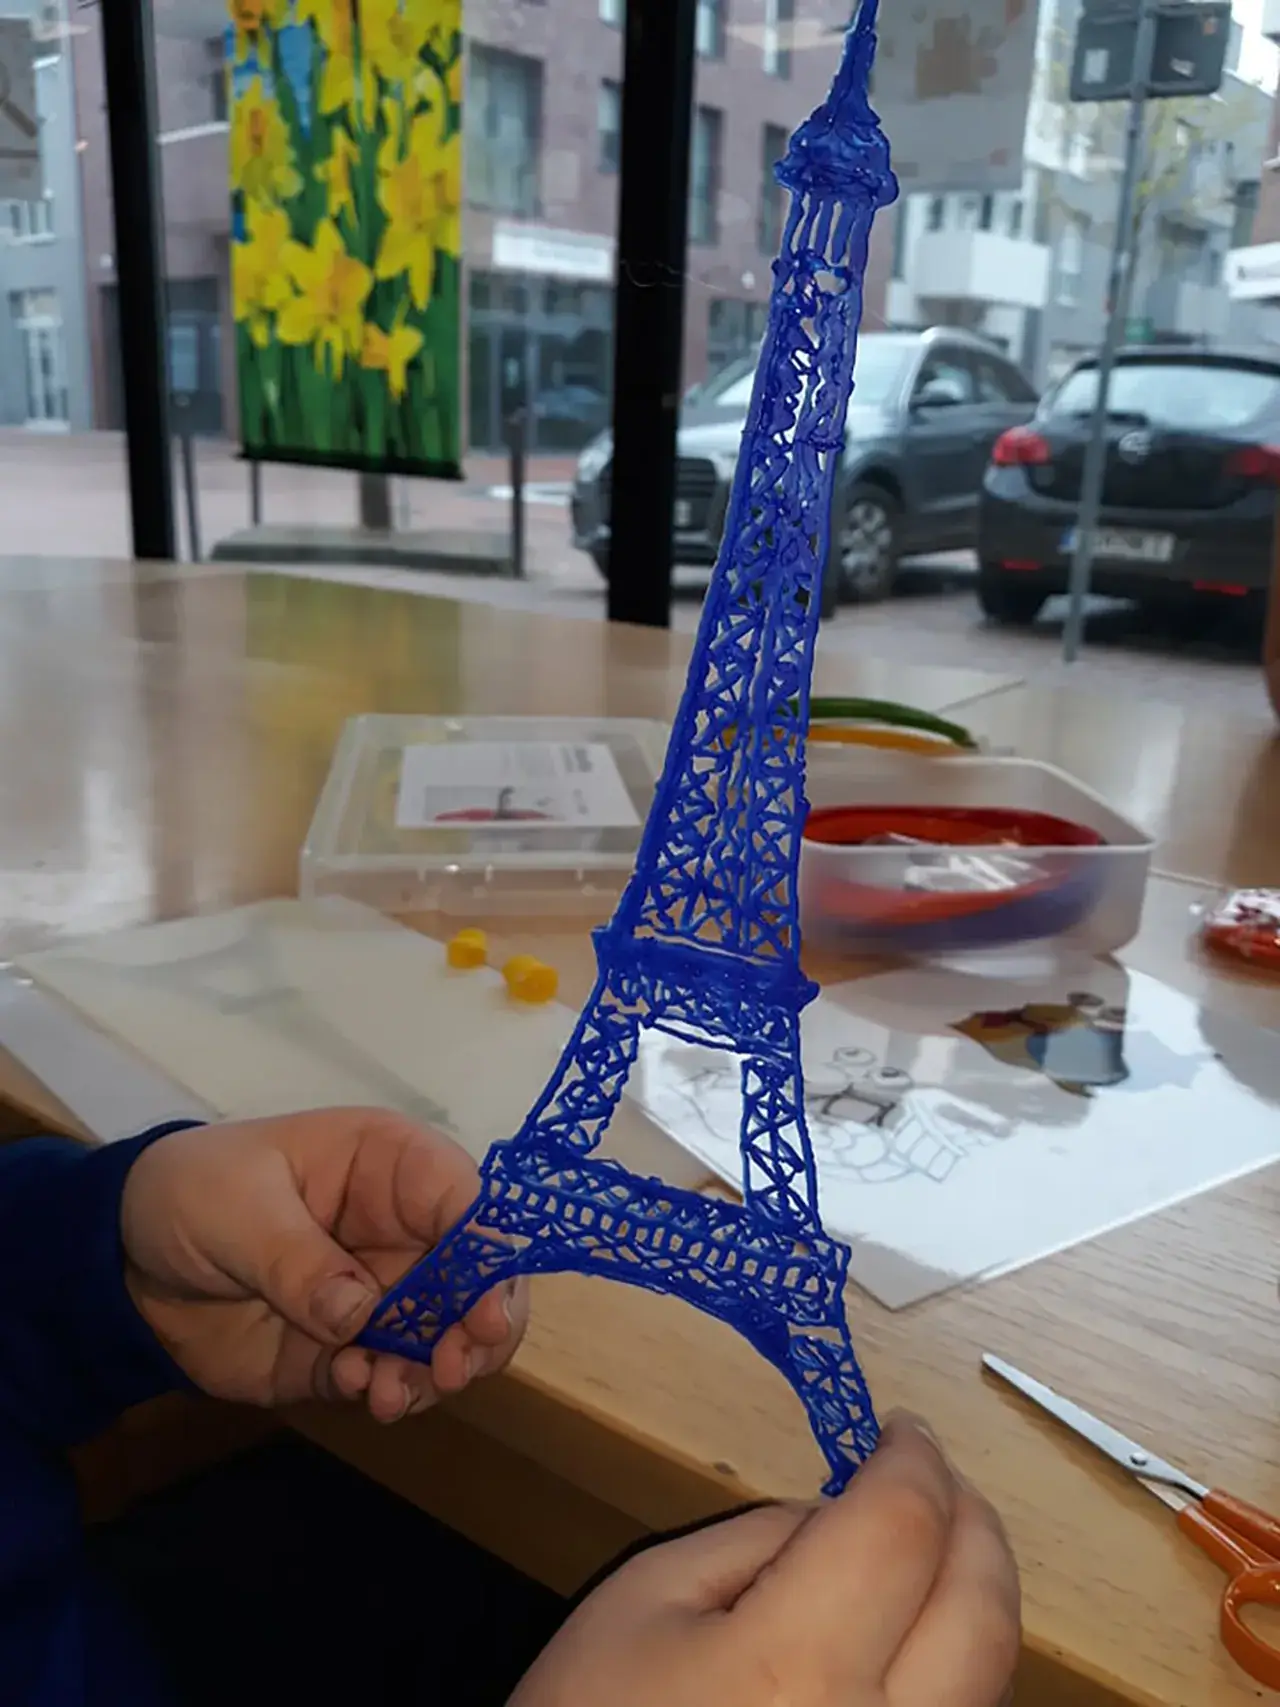 Projekte 2019 - Makerboxen - Makerdays - 3D-Stift - Bild 3 von 3